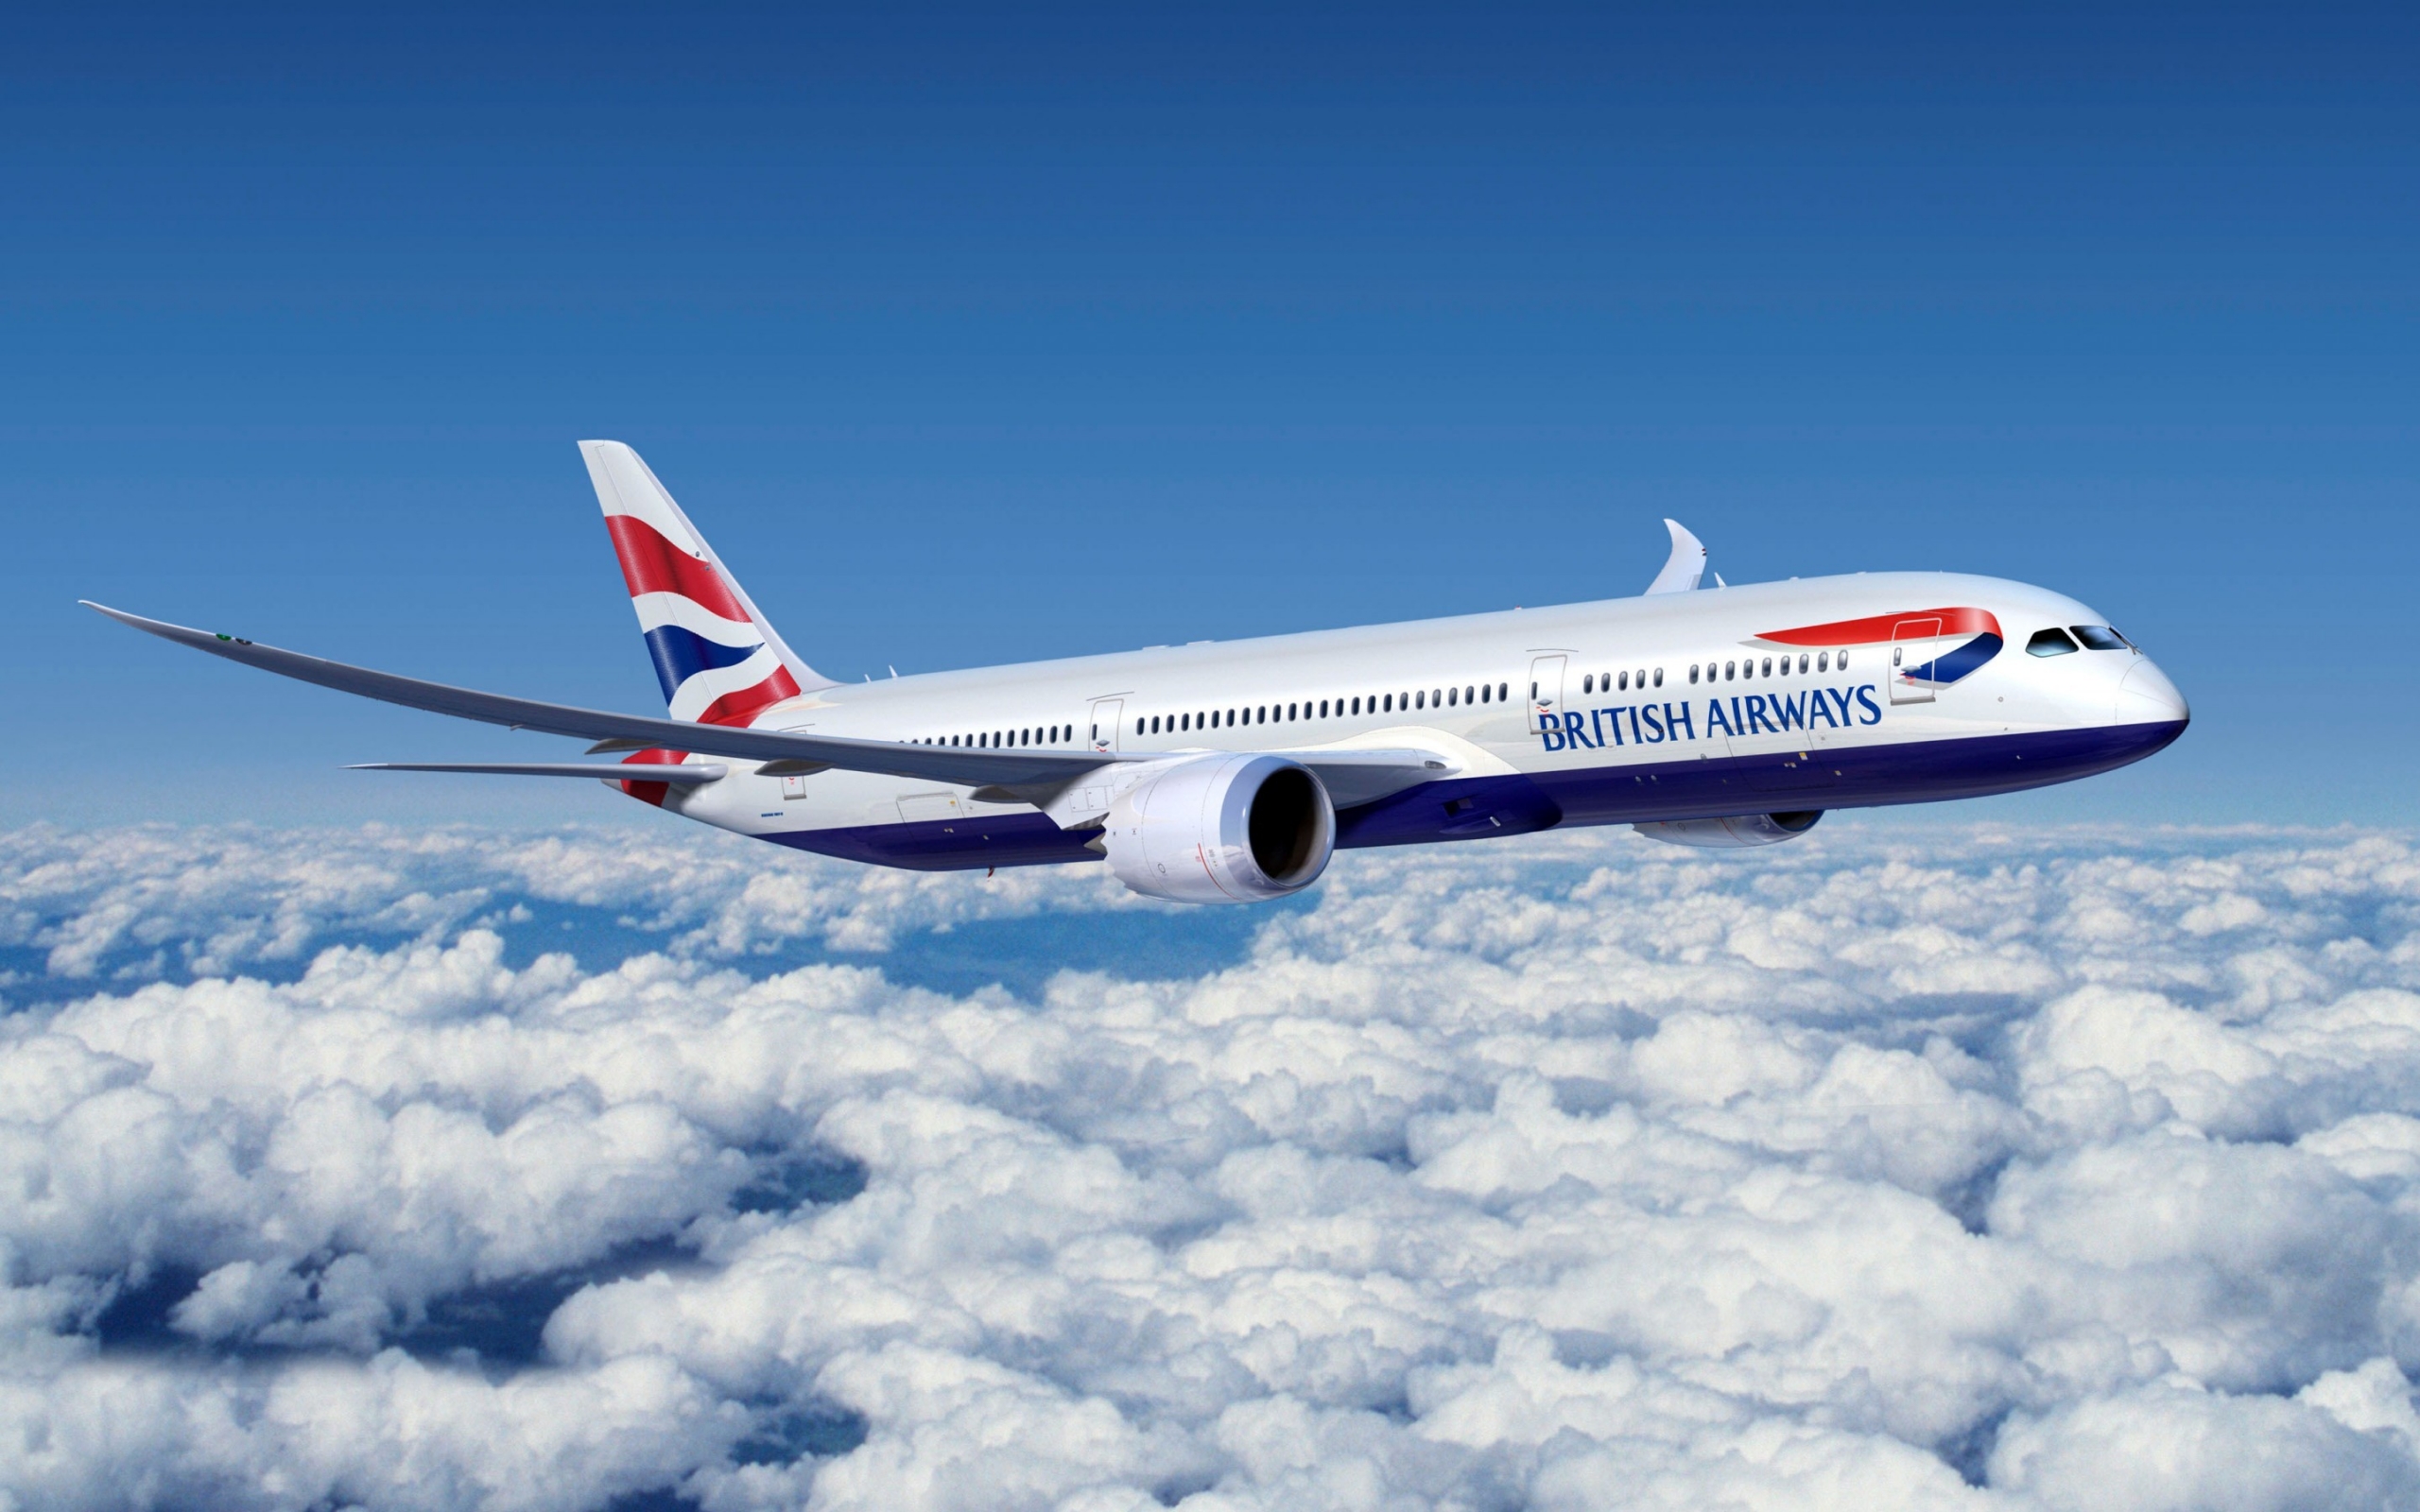 Boeing 777 British Airways for 2560 x 1600 widescreen resolution